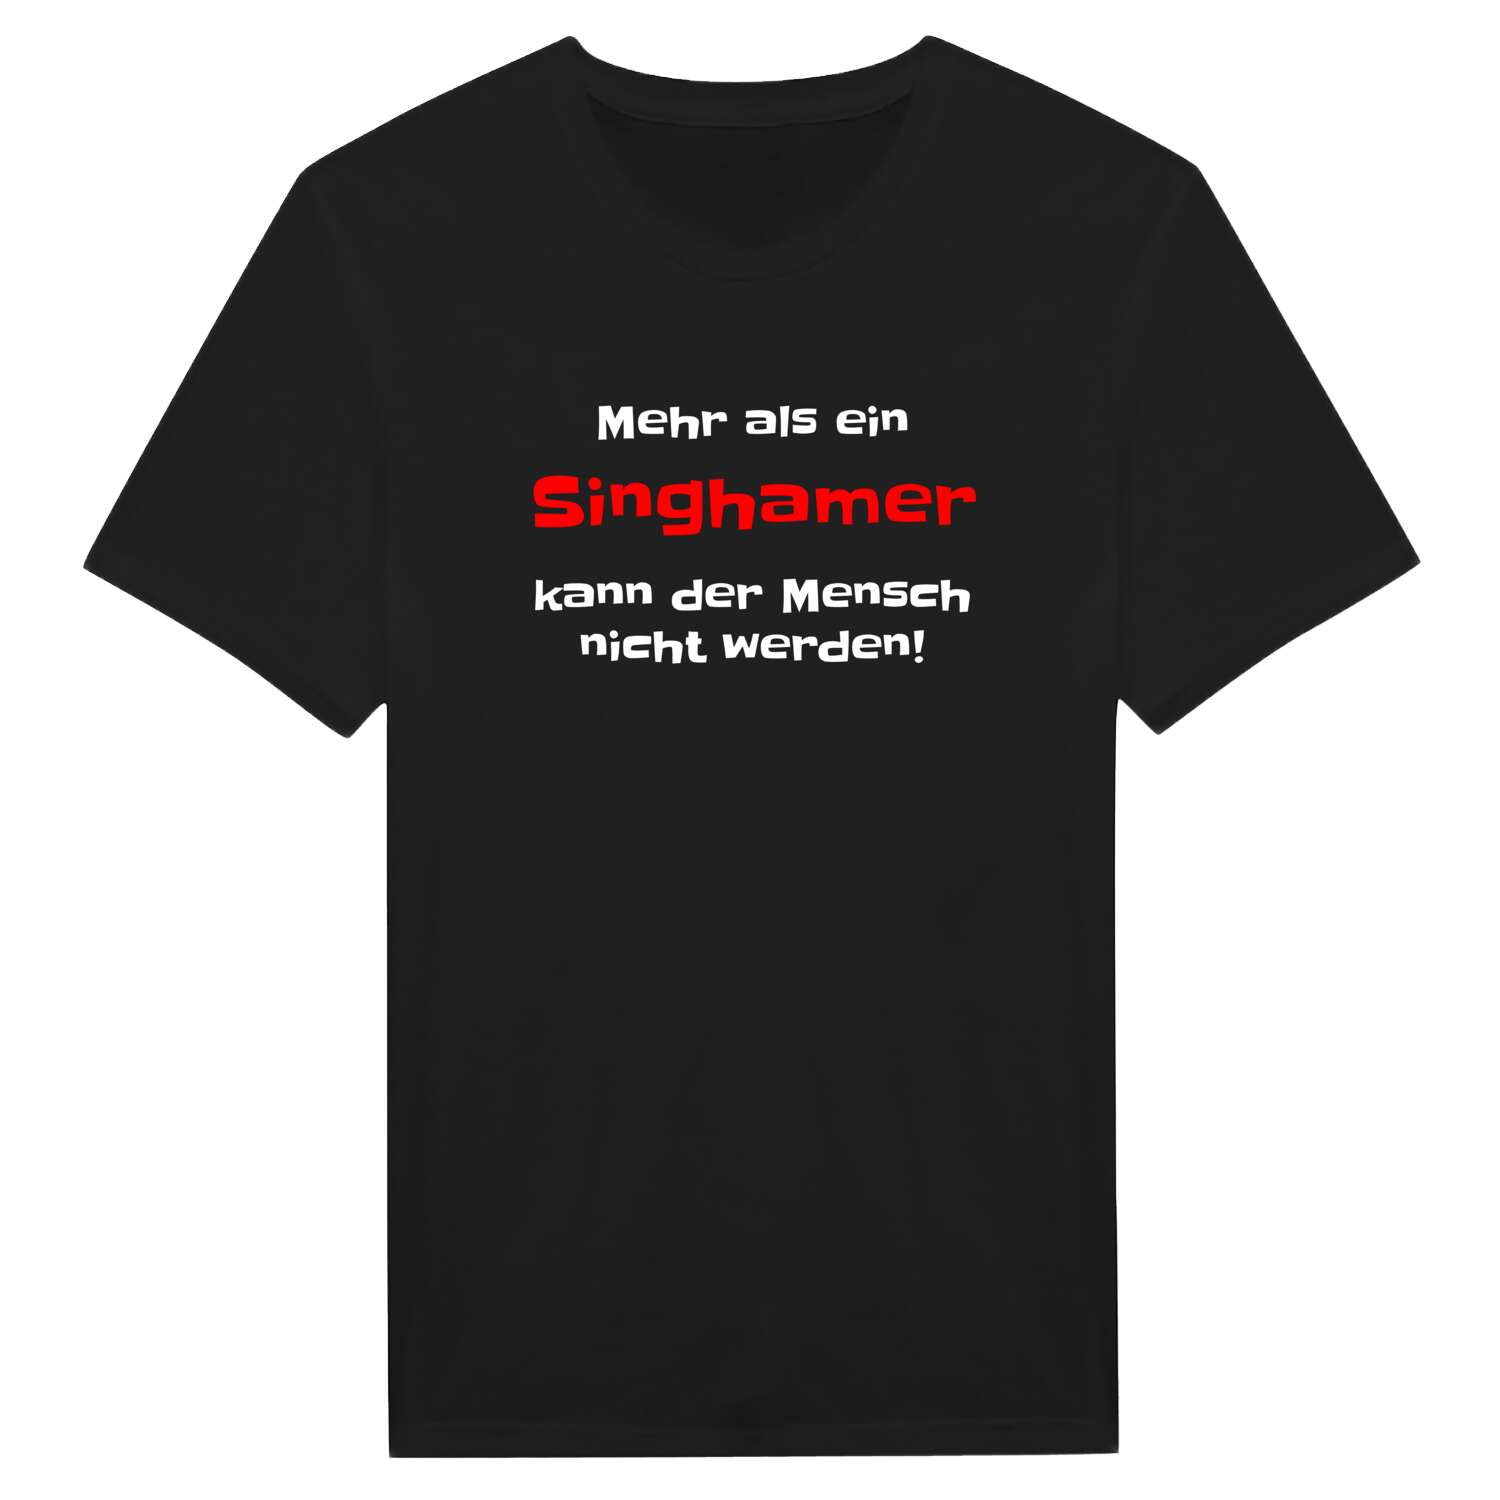 Singham T-Shirt »Mehr als ein«